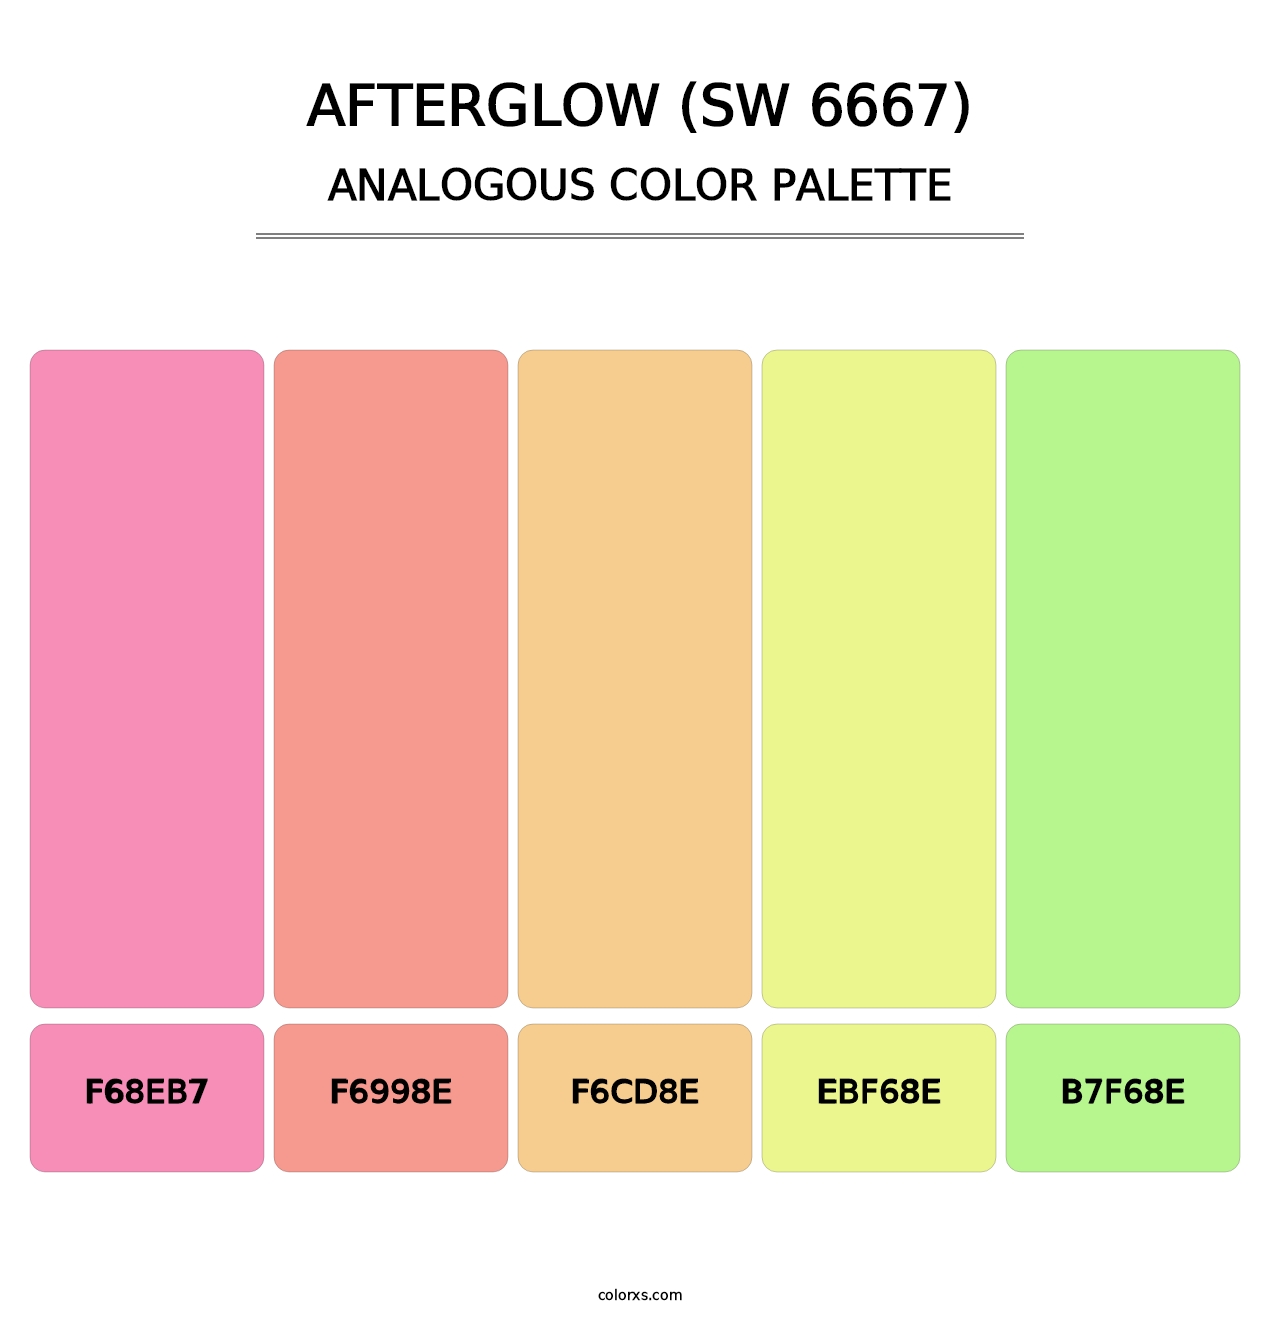 Afterglow (SW 6667) - Analogous Color Palette